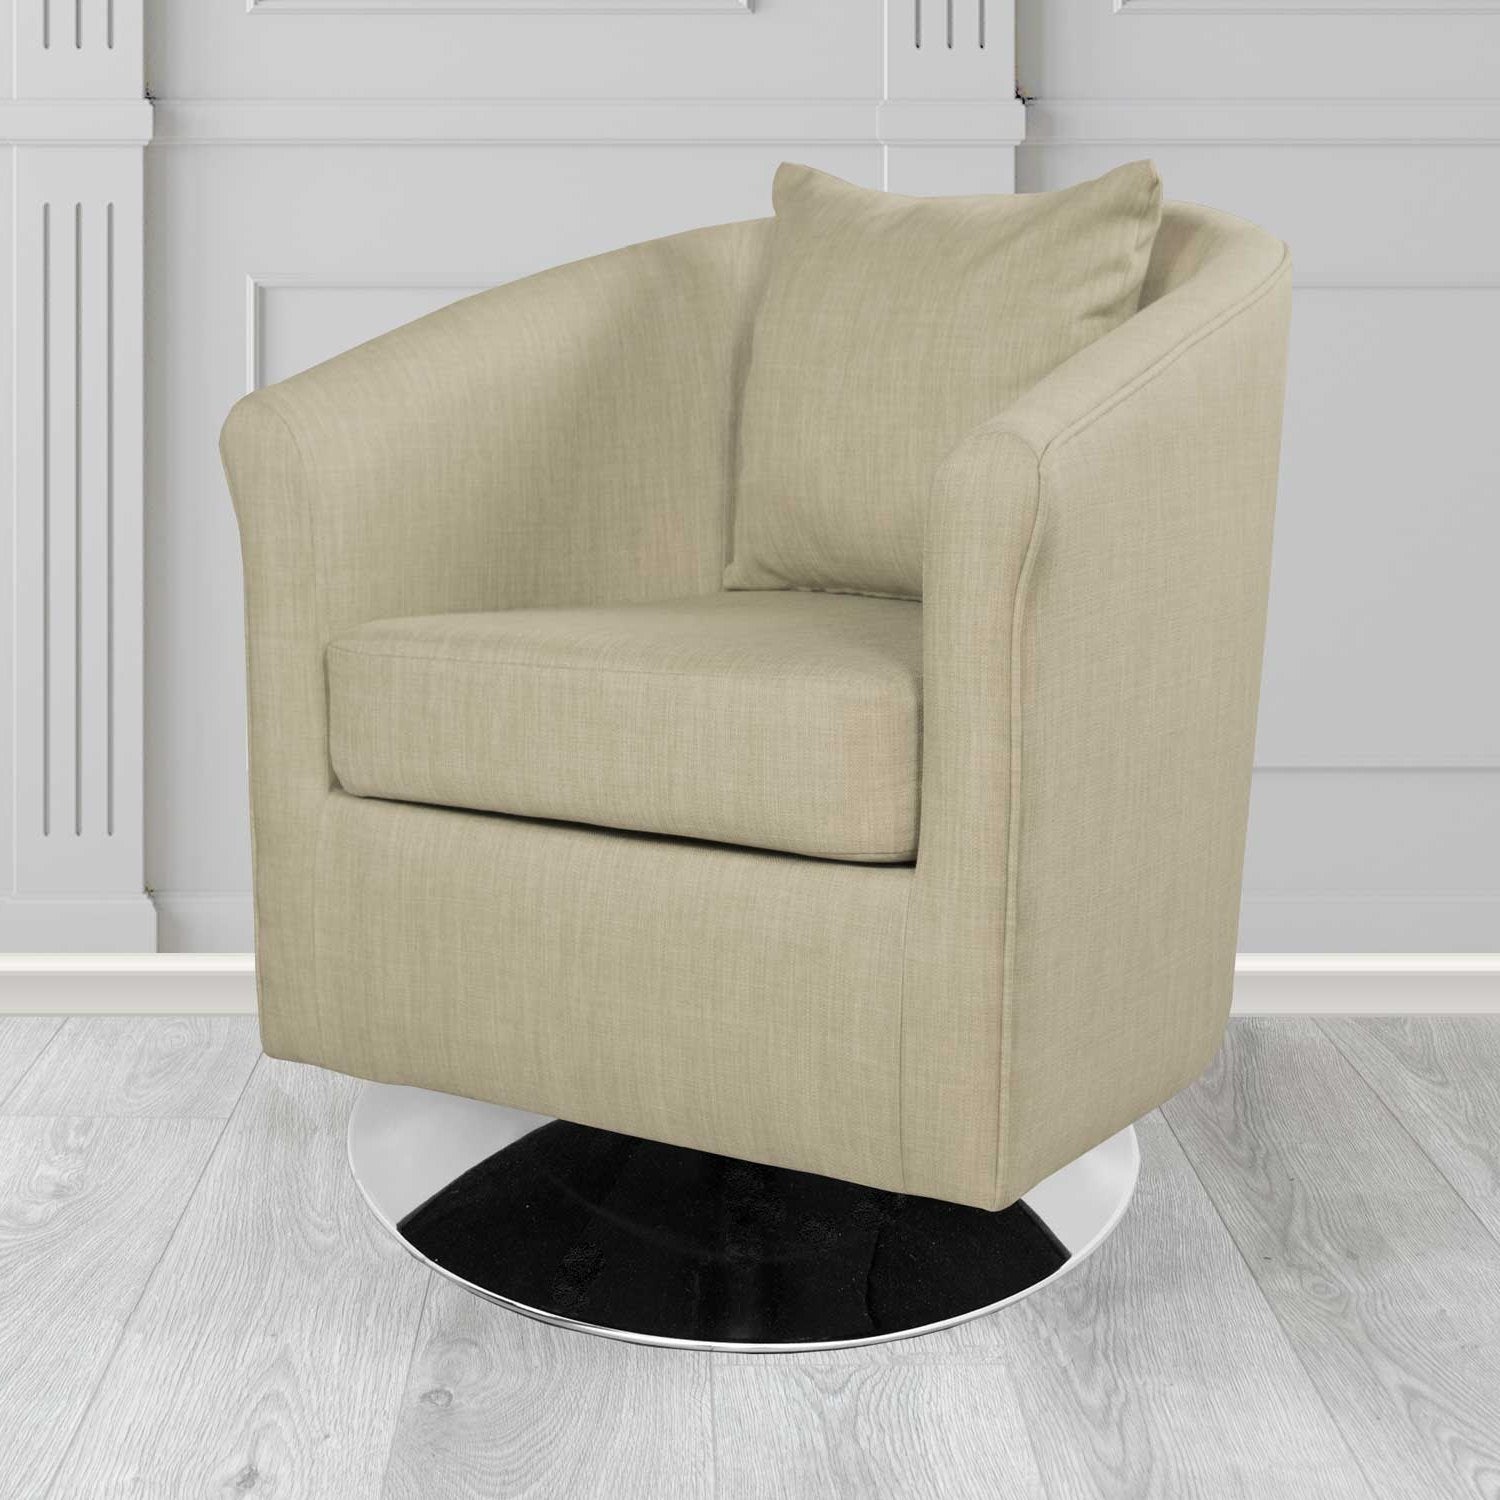 St Tropez Charles Fudge Plain Linen Fabric Swivel Tub Chair - The Tub Chair Shop